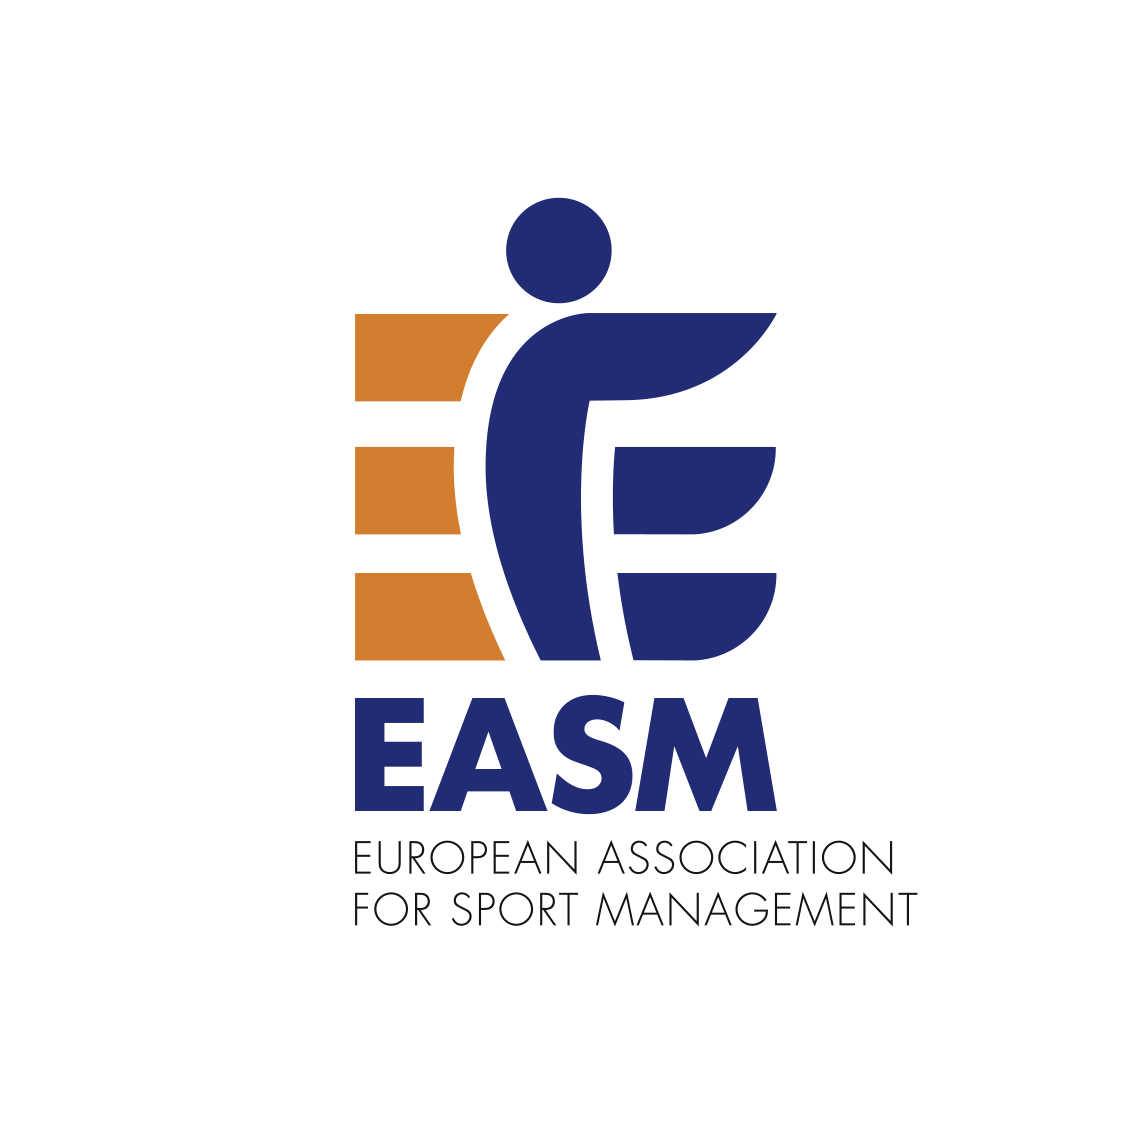 Wort-Bild-Marke EASM